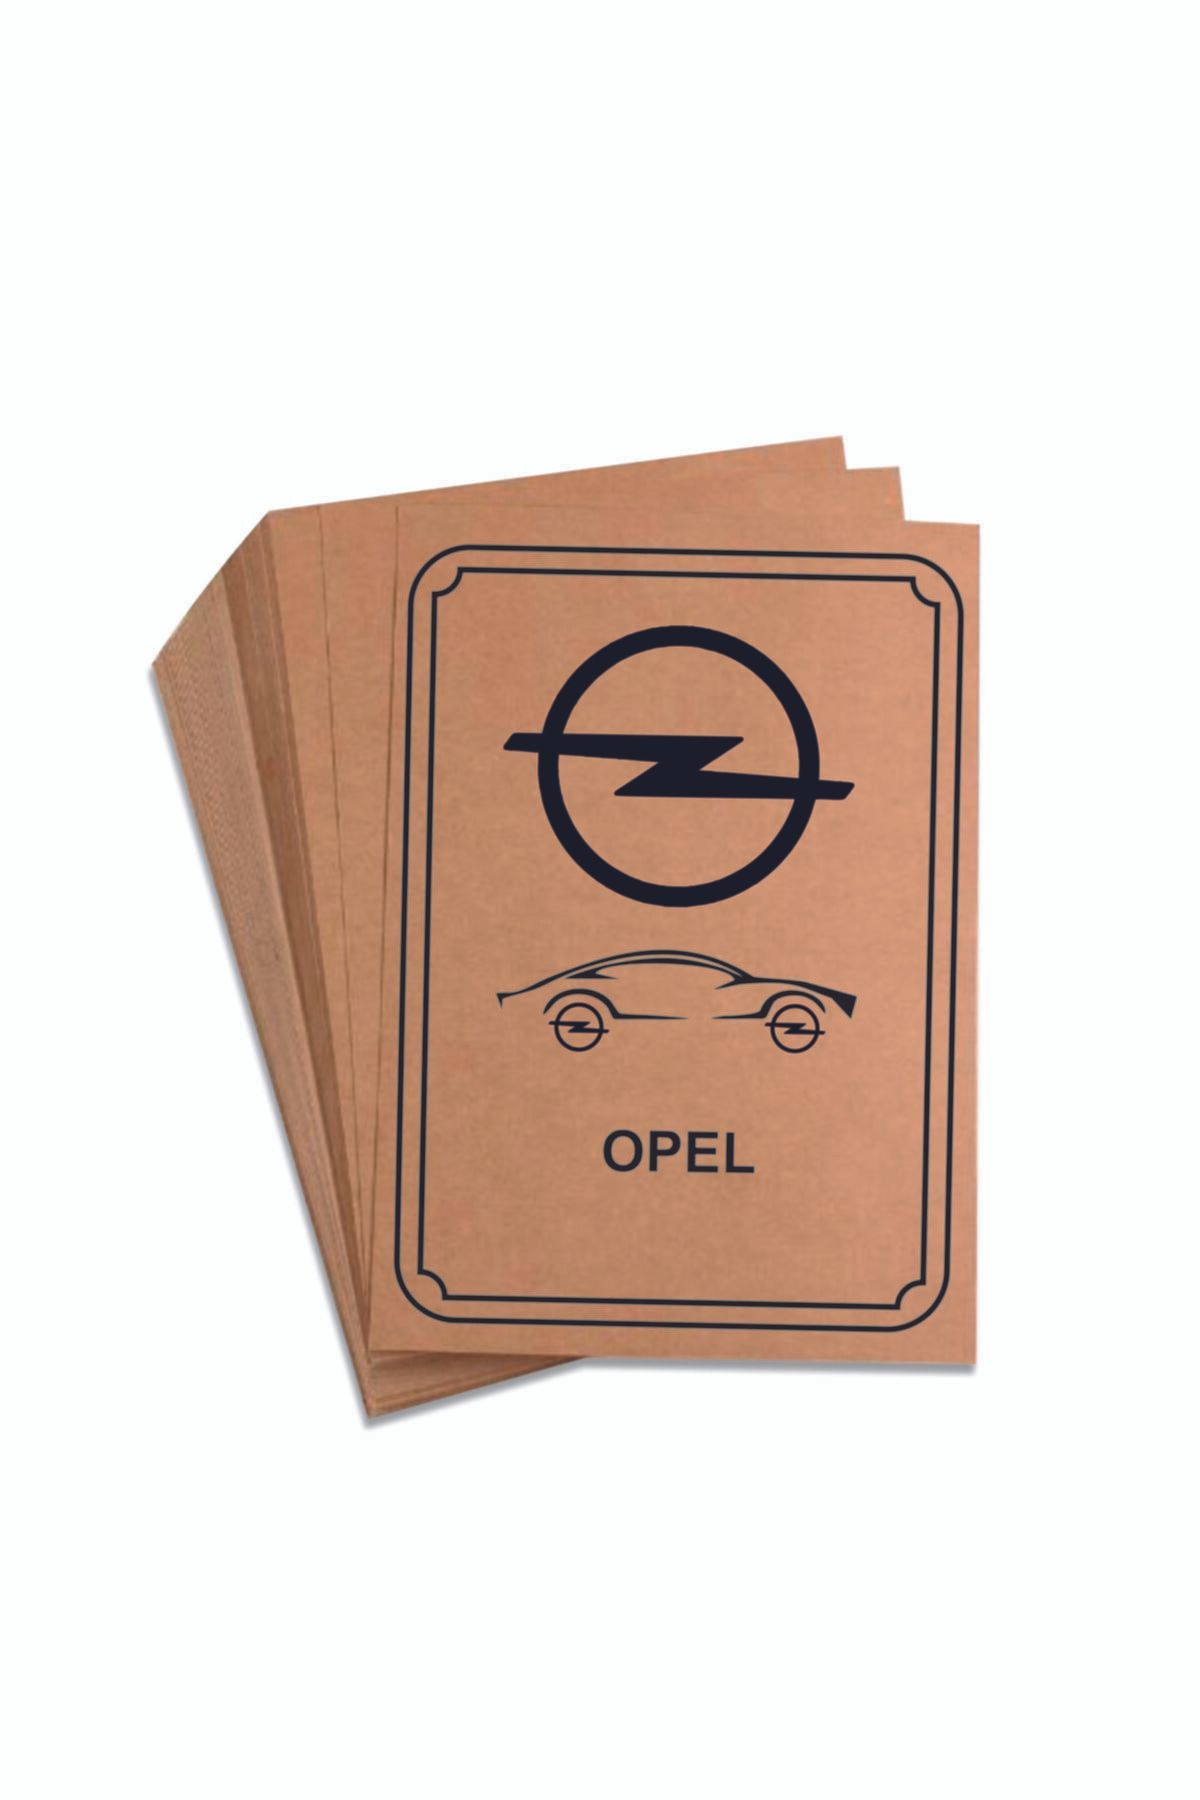 Wall10 Opel Baskılı Oto Kağıt Paspas 35x50cm 70 Gr 100 Adet